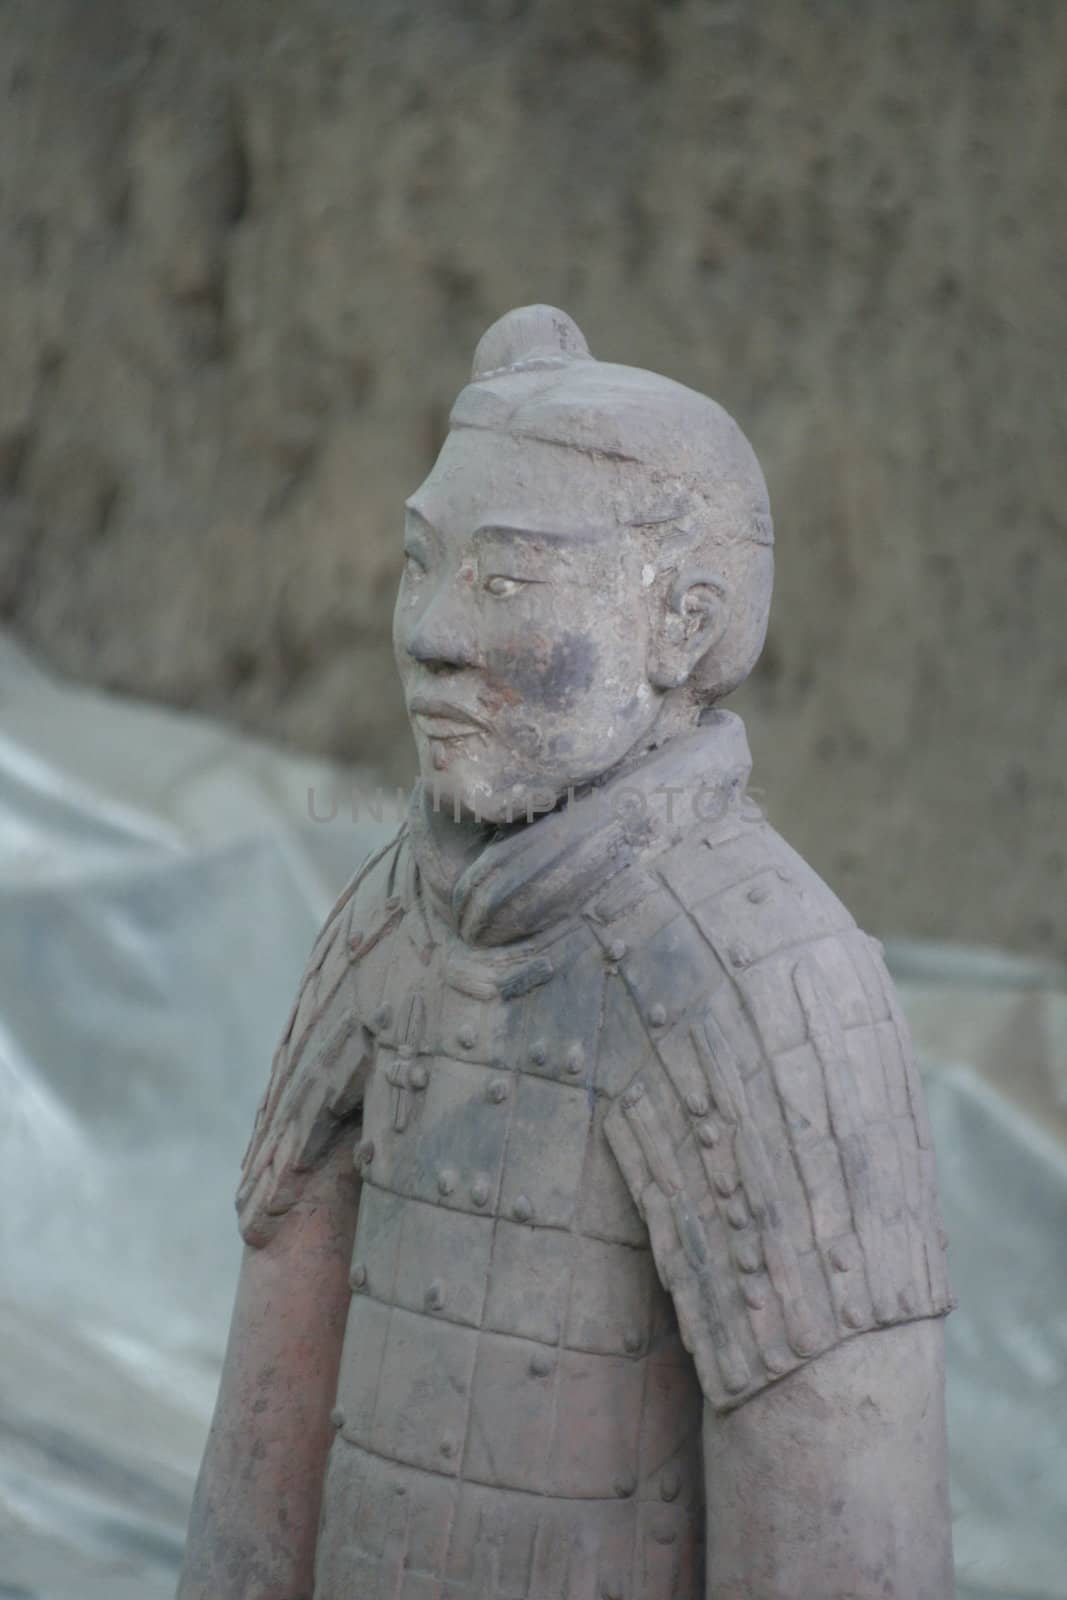 Terracotta Army Xian / Xi'an, China - Detail - face